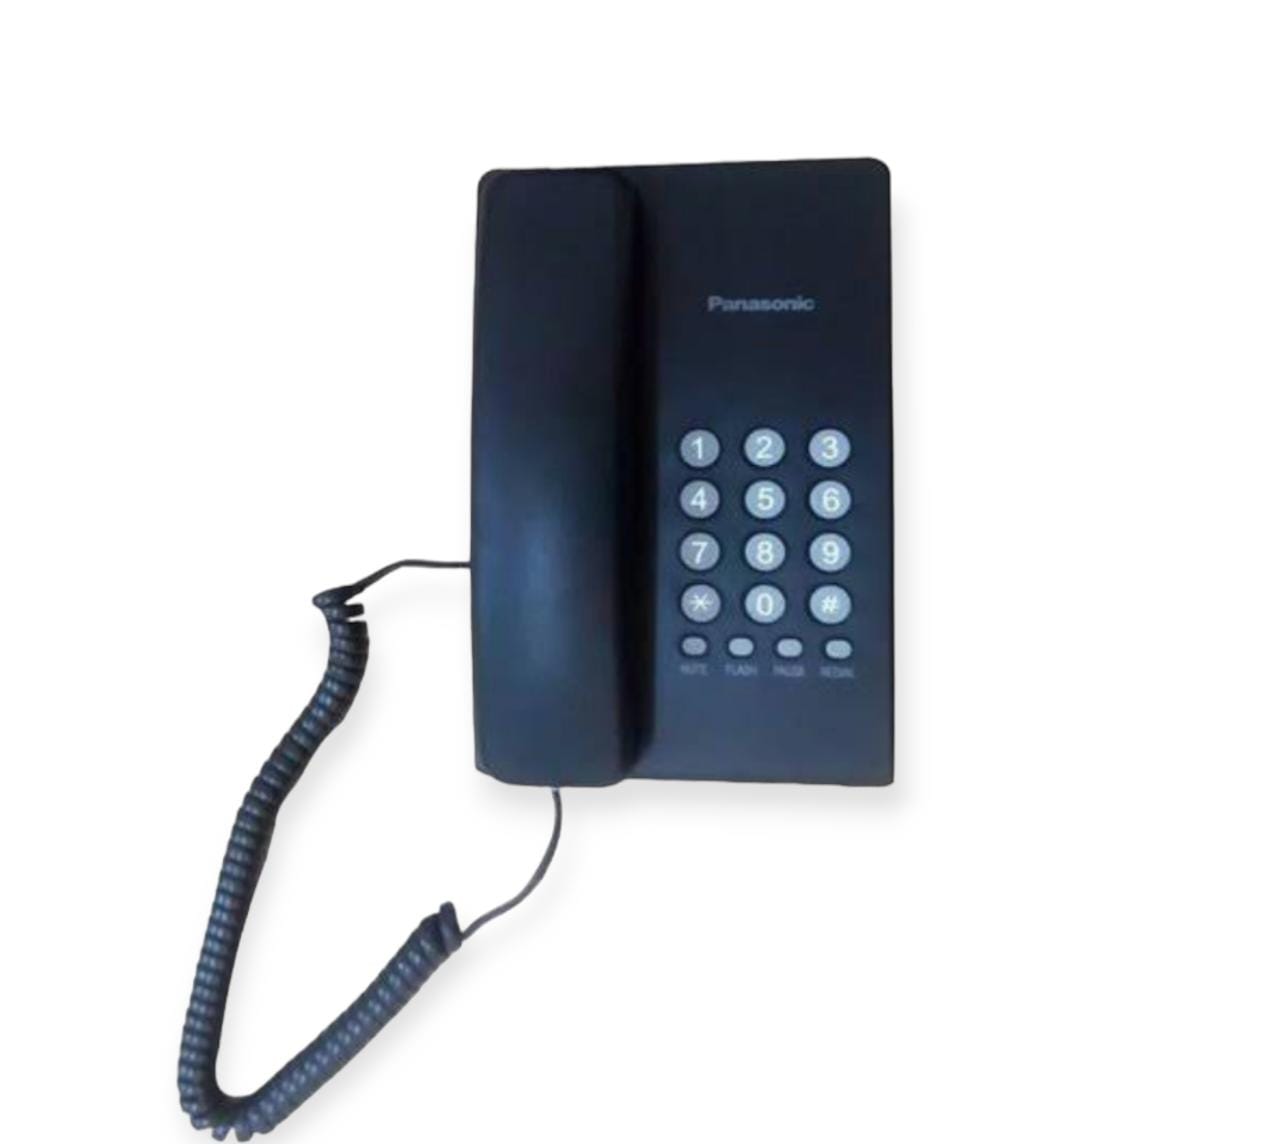 Panasonic telephone